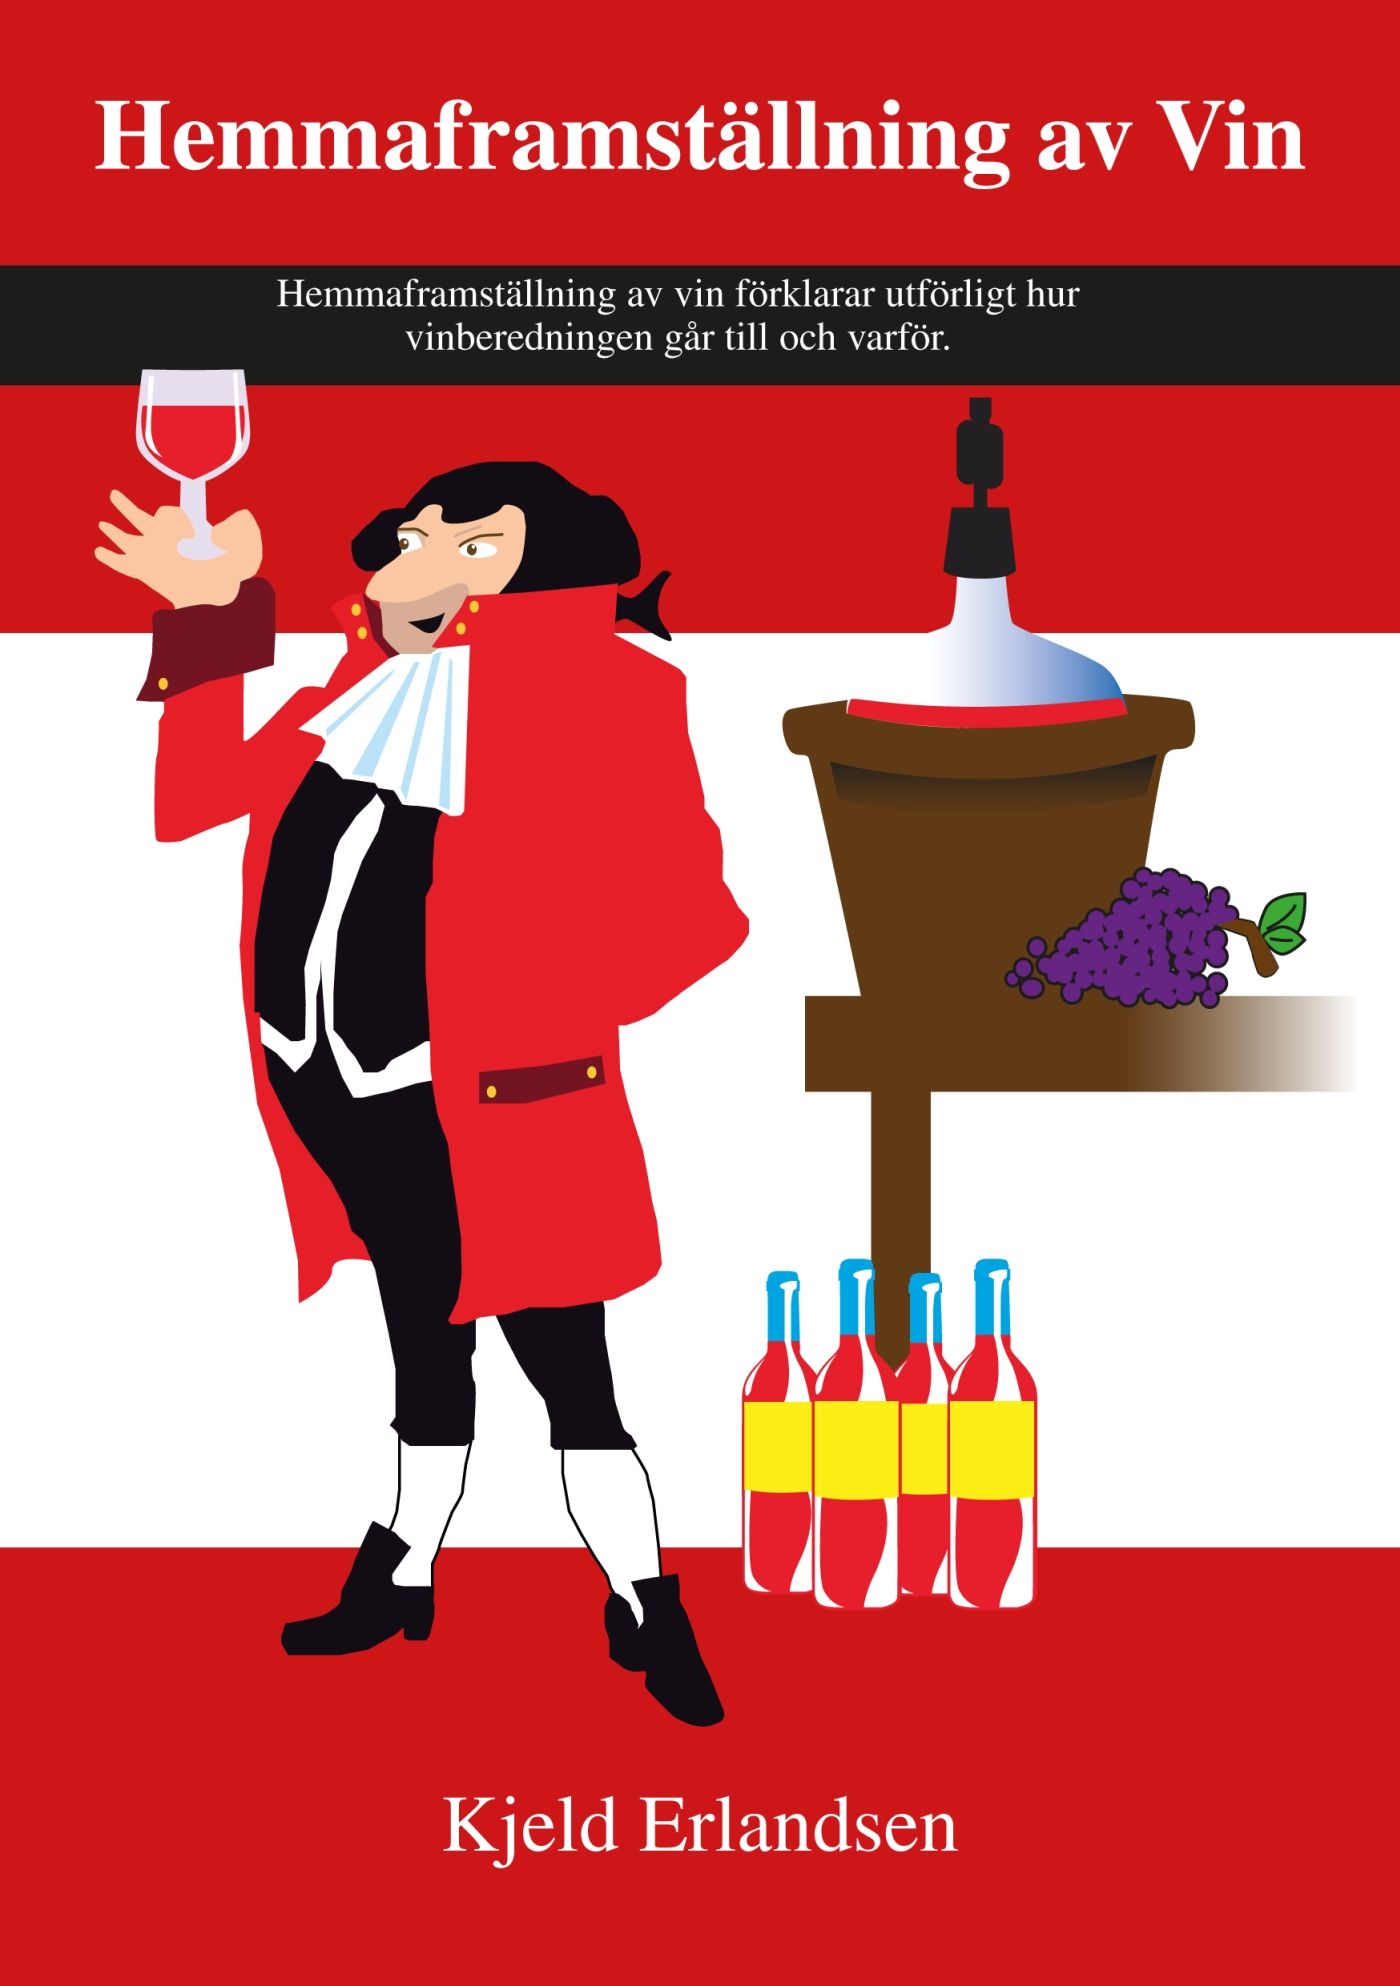 Hemmaframställning av Vin, eBook by Kjeld Erlandsen